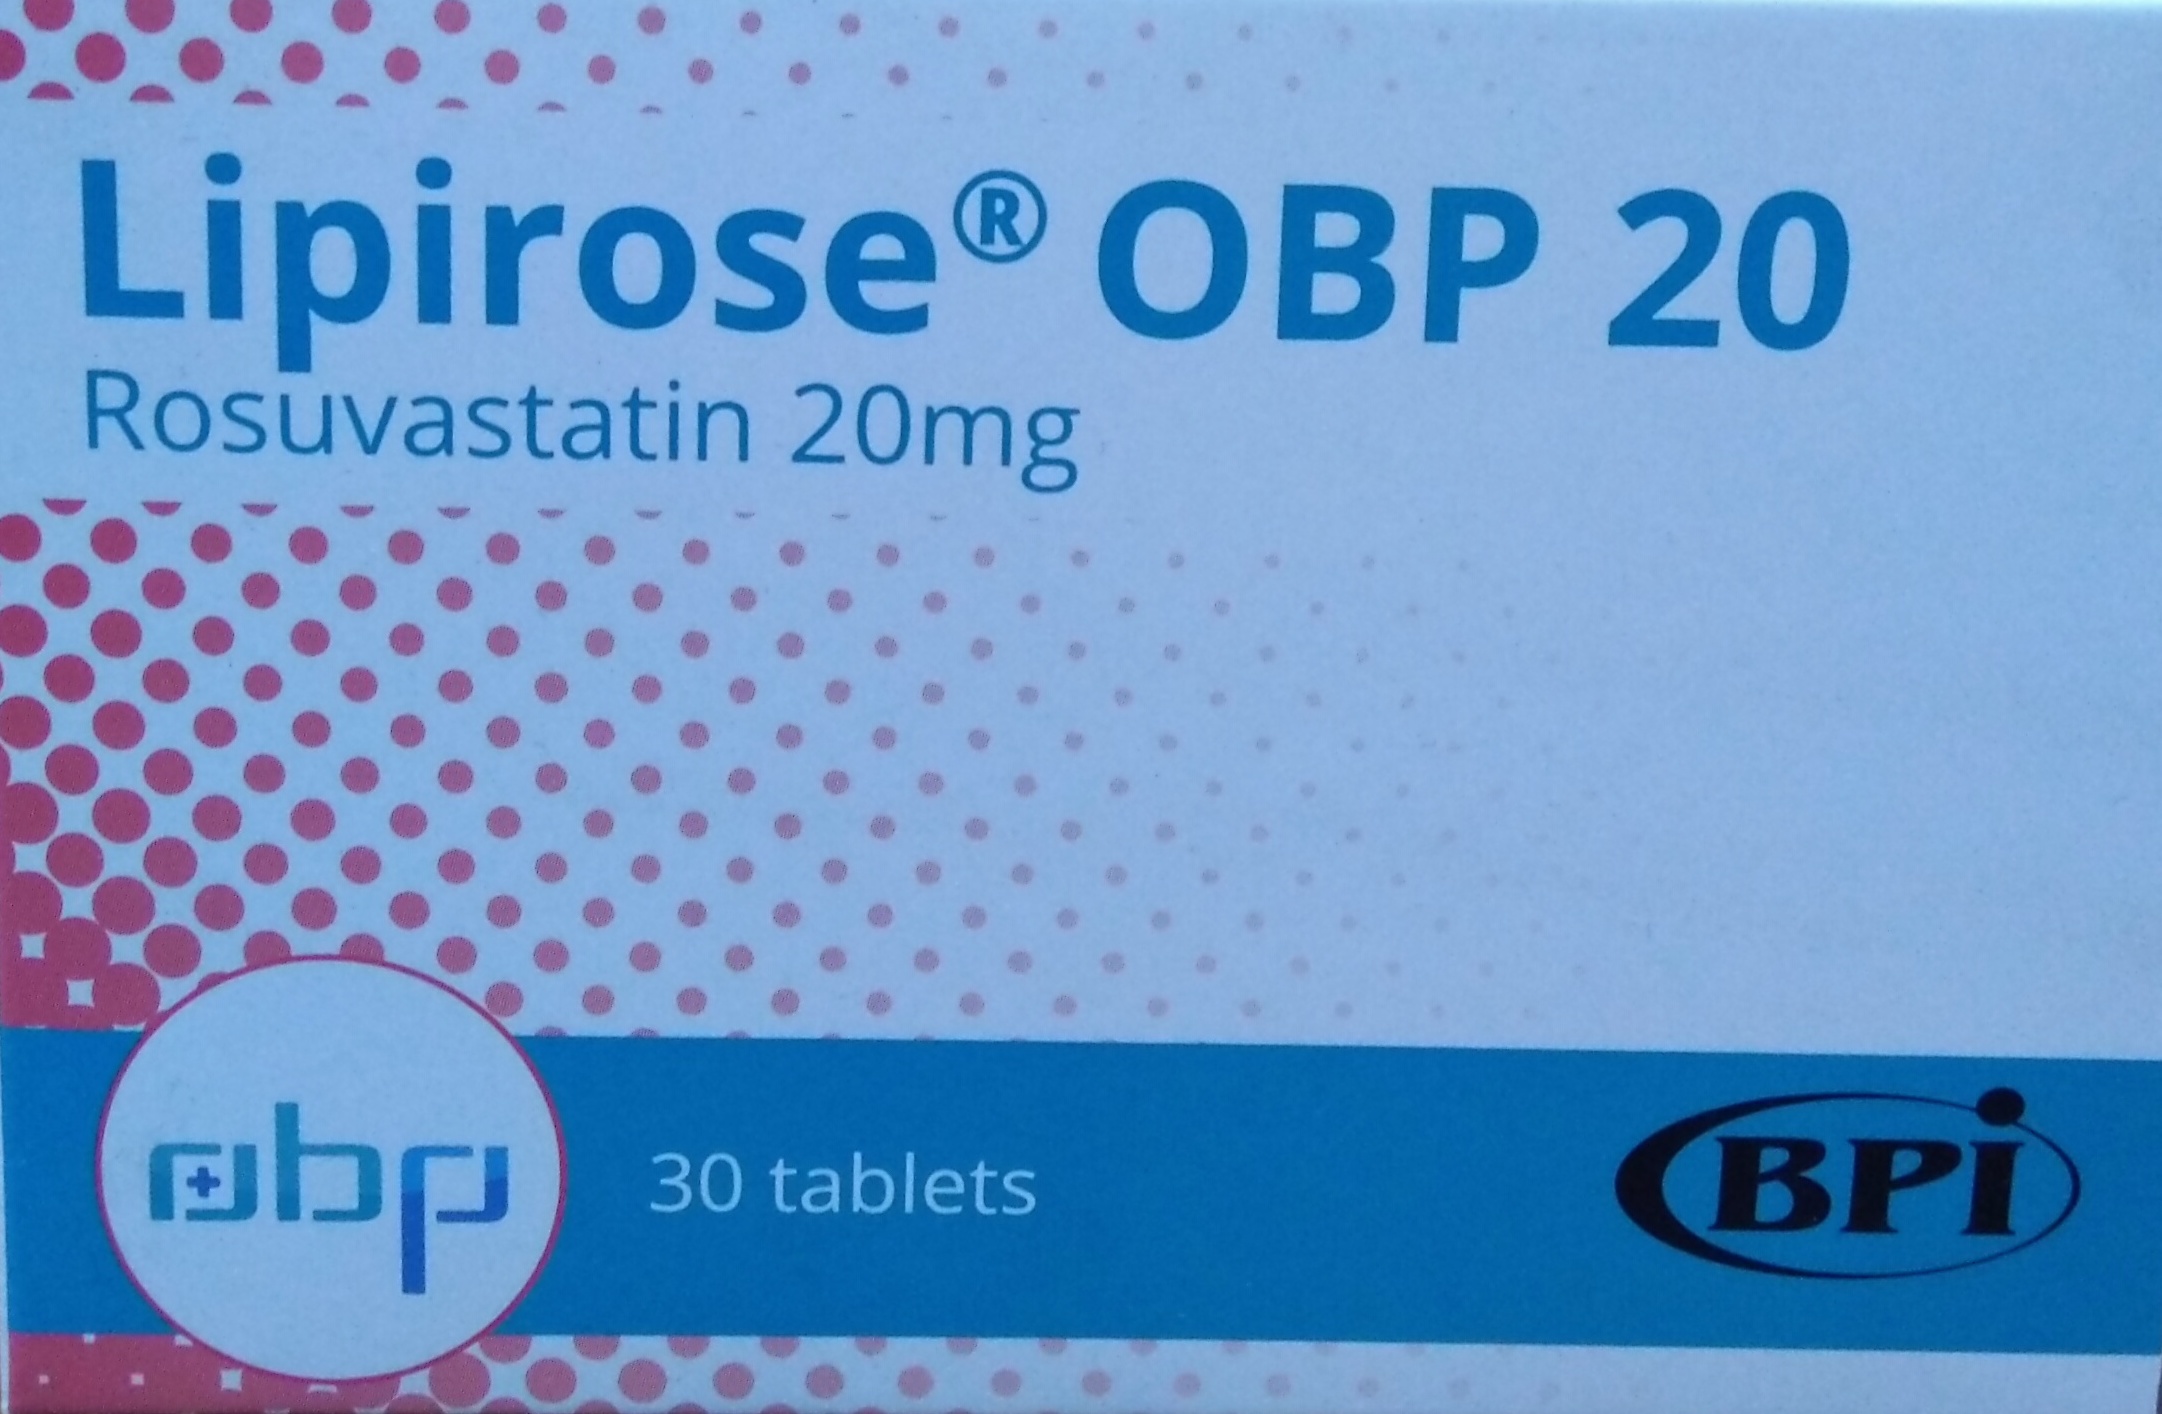 Liprose OBP 20